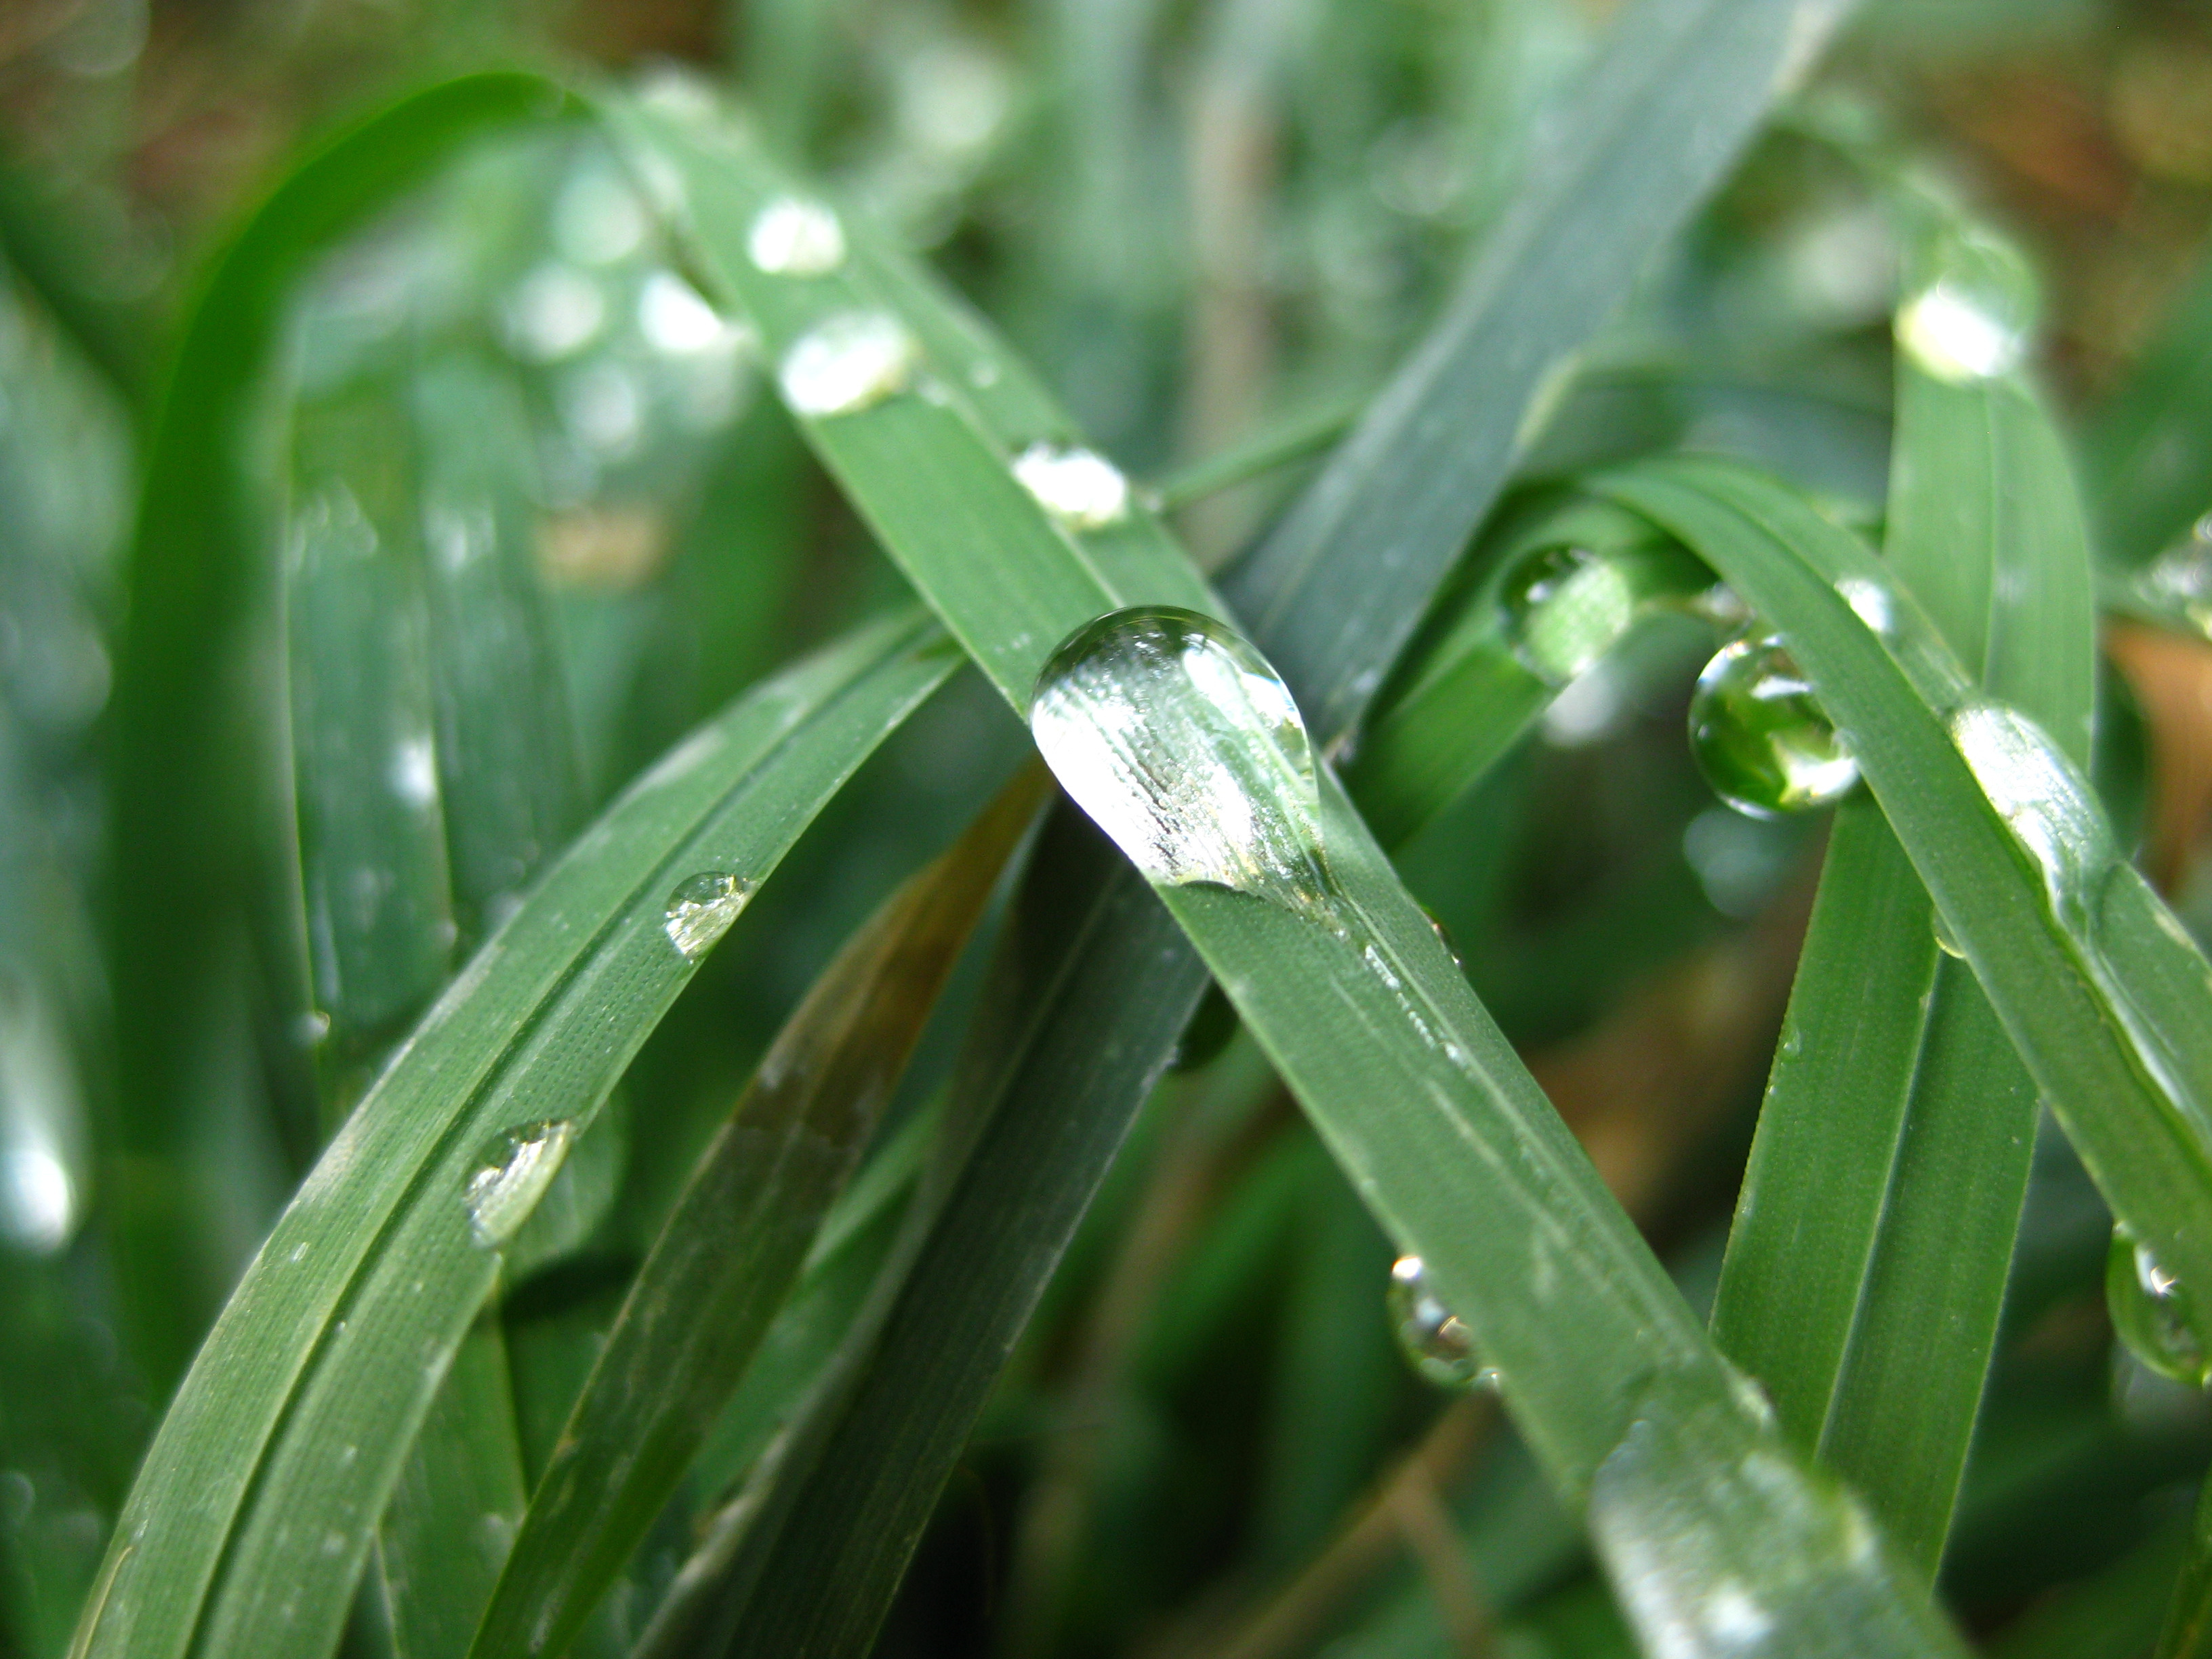 Dew on grass blade, Blade, Dew, Grass, Moisture, HQ Photo